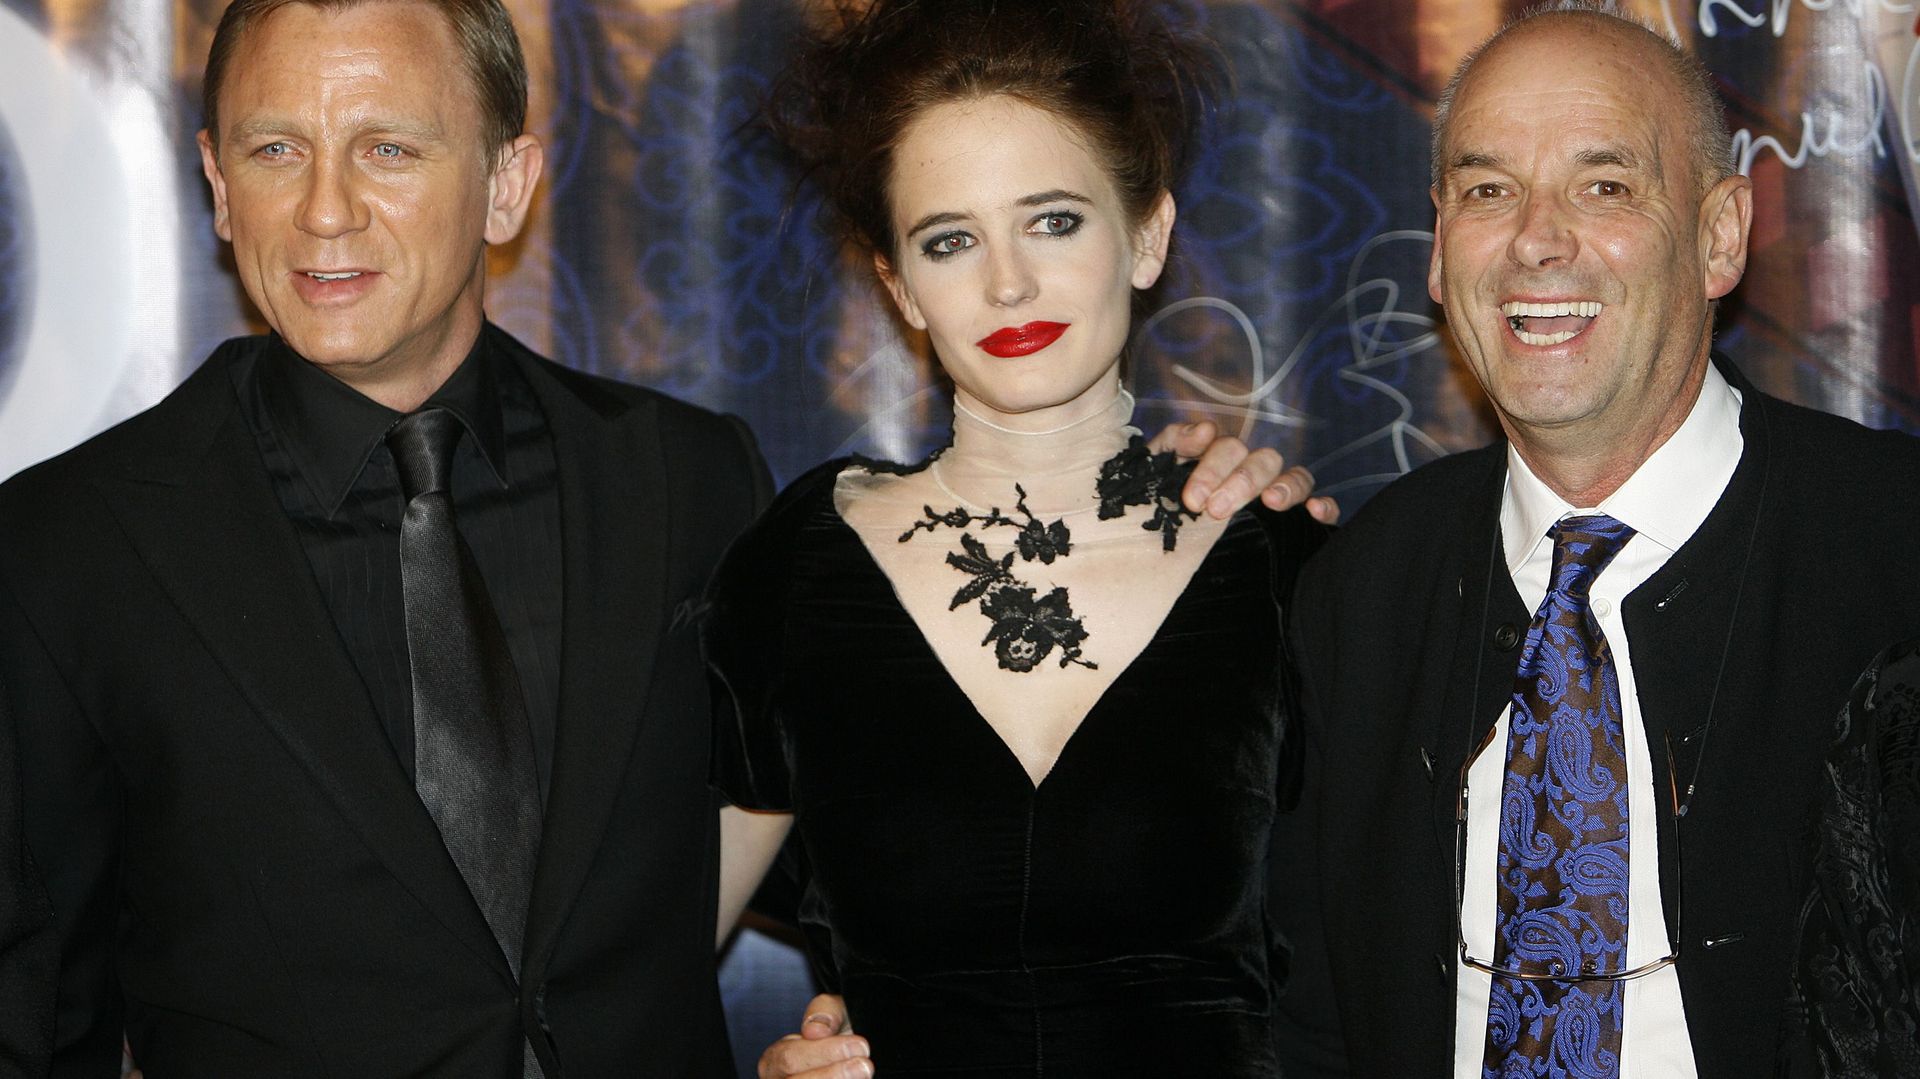 Martin Campbell (à droite) est connu pour avoir tourné deux opus de James Bond, dont "Casino Royale" avec Daniel Craig et Eva Green.